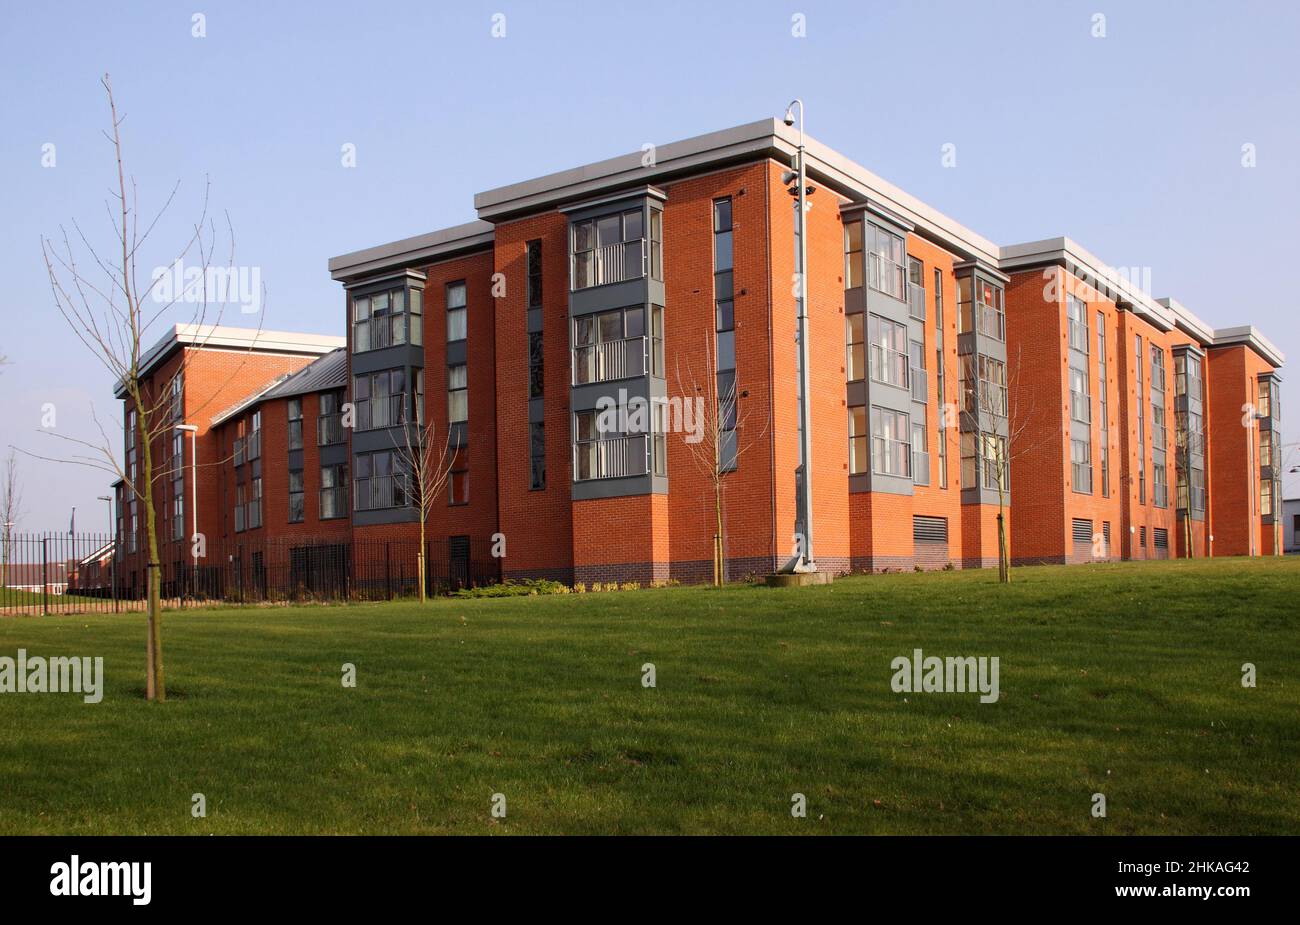 Moderno bloque de apartamentos en Wolverhampton, West Midlands, Inglaterra, Reino Unido, cielo azul Foto de stock